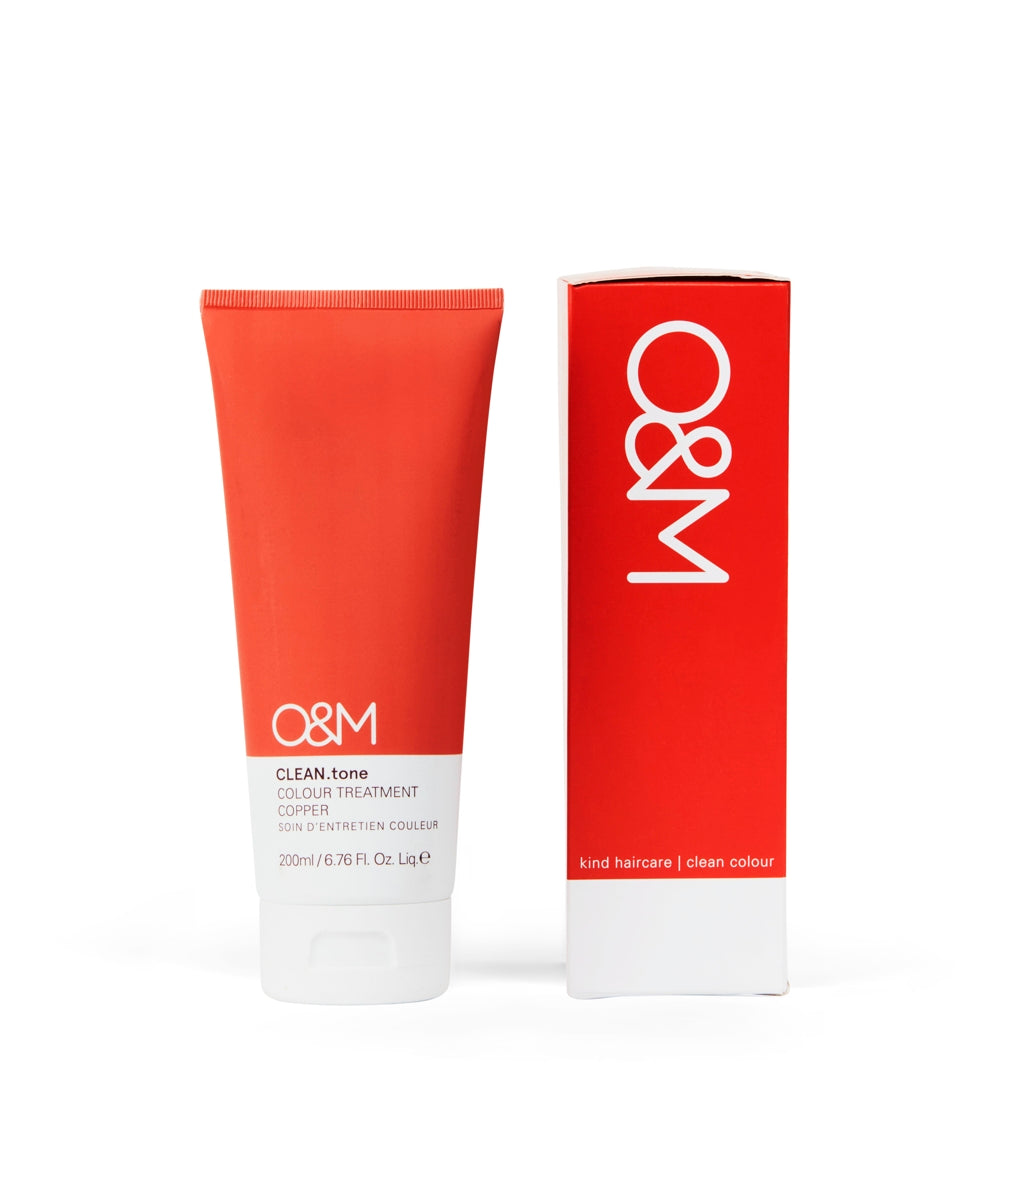 O&M CLEAN.tone Colour Treatment COPPER 200ml